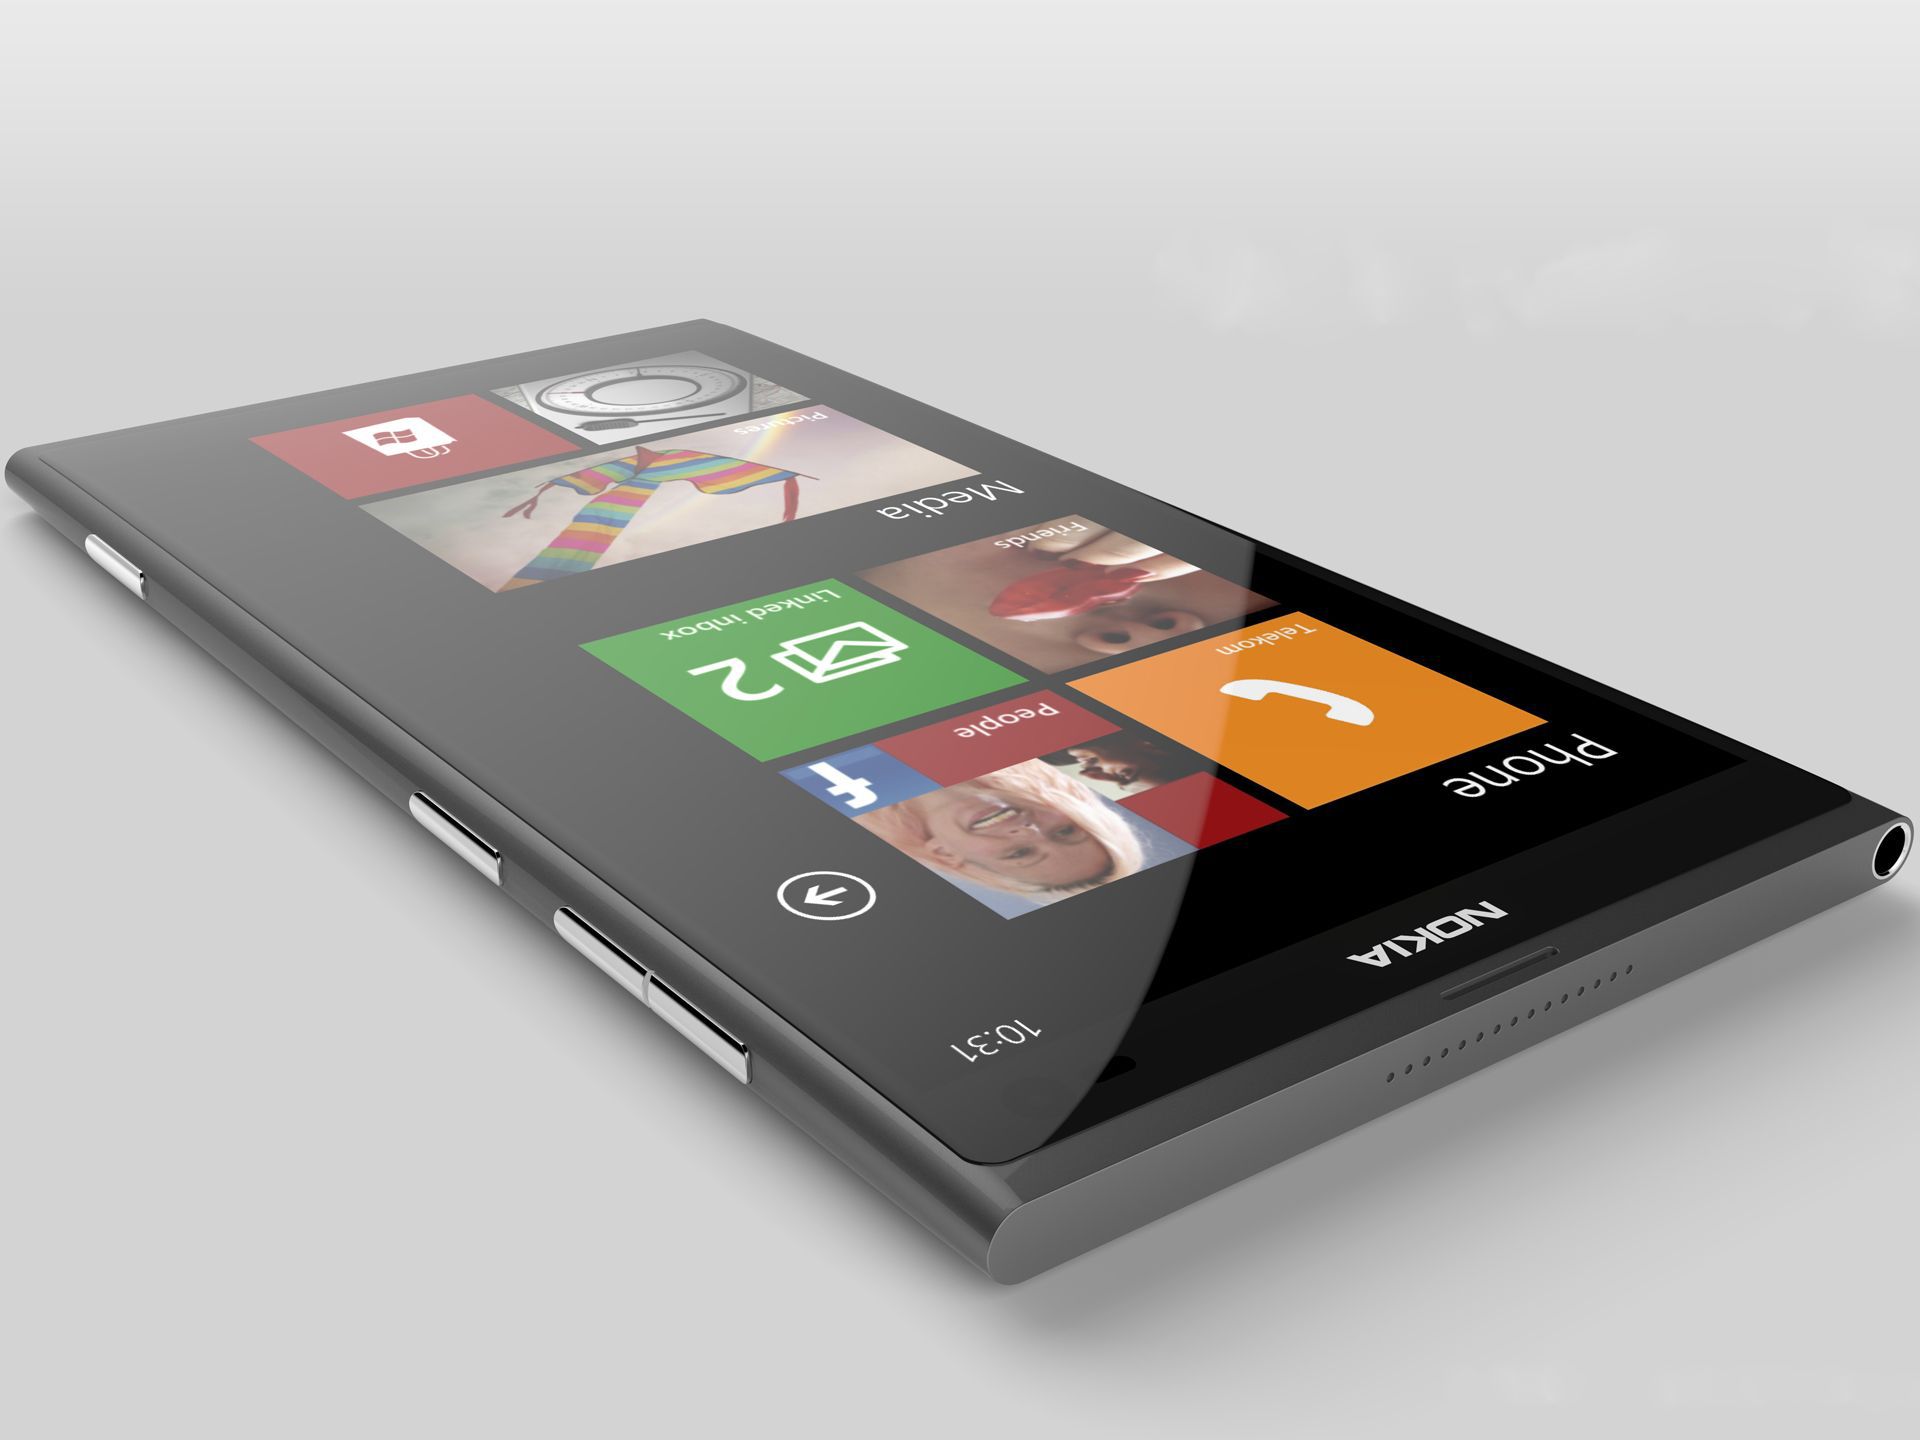 Nokia Lumia 920 Games Downloads